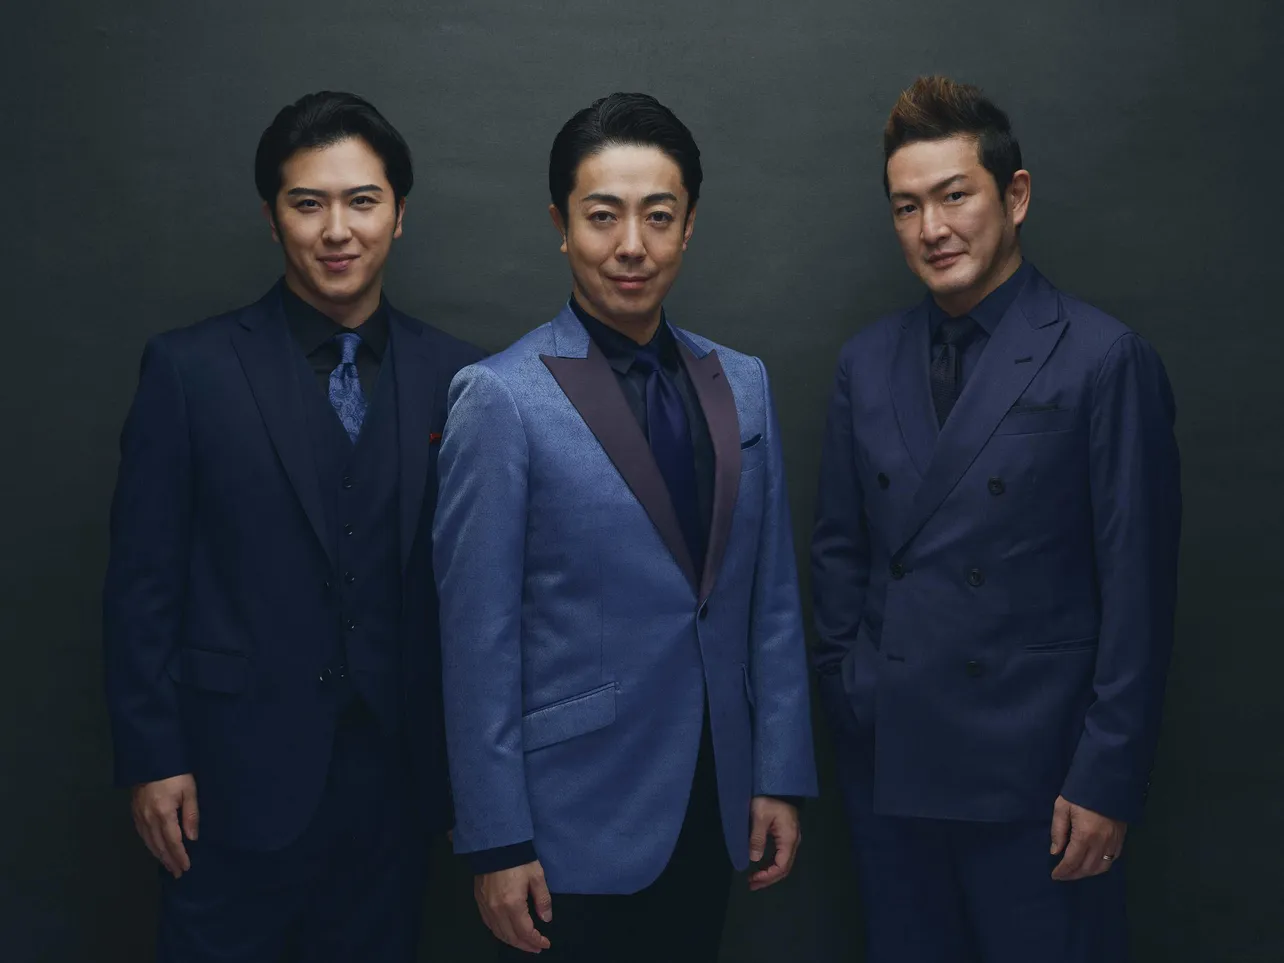 『新作歌舞伎 ファイナルファンタジーX』に出演する尾上菊之助(中央)、中村獅童(左)、尾上松也(右)